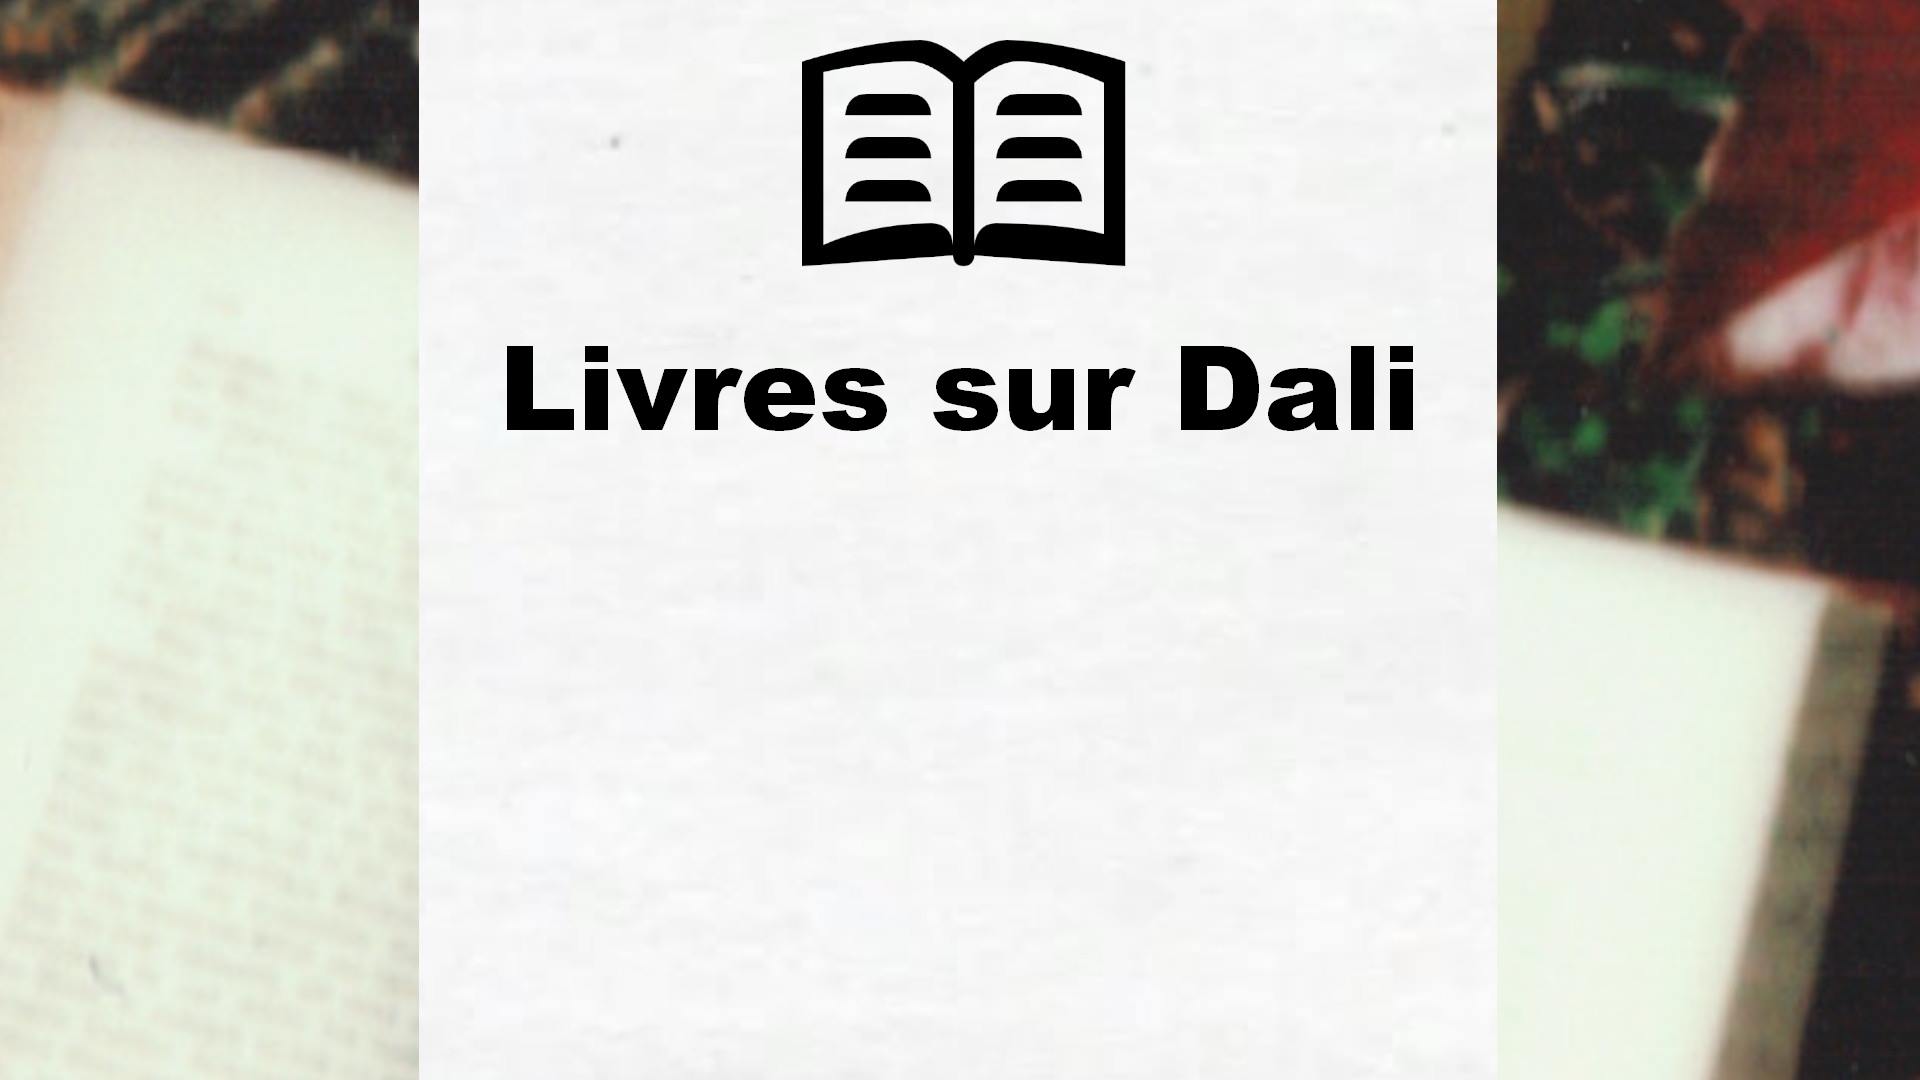 Livres sur Dali